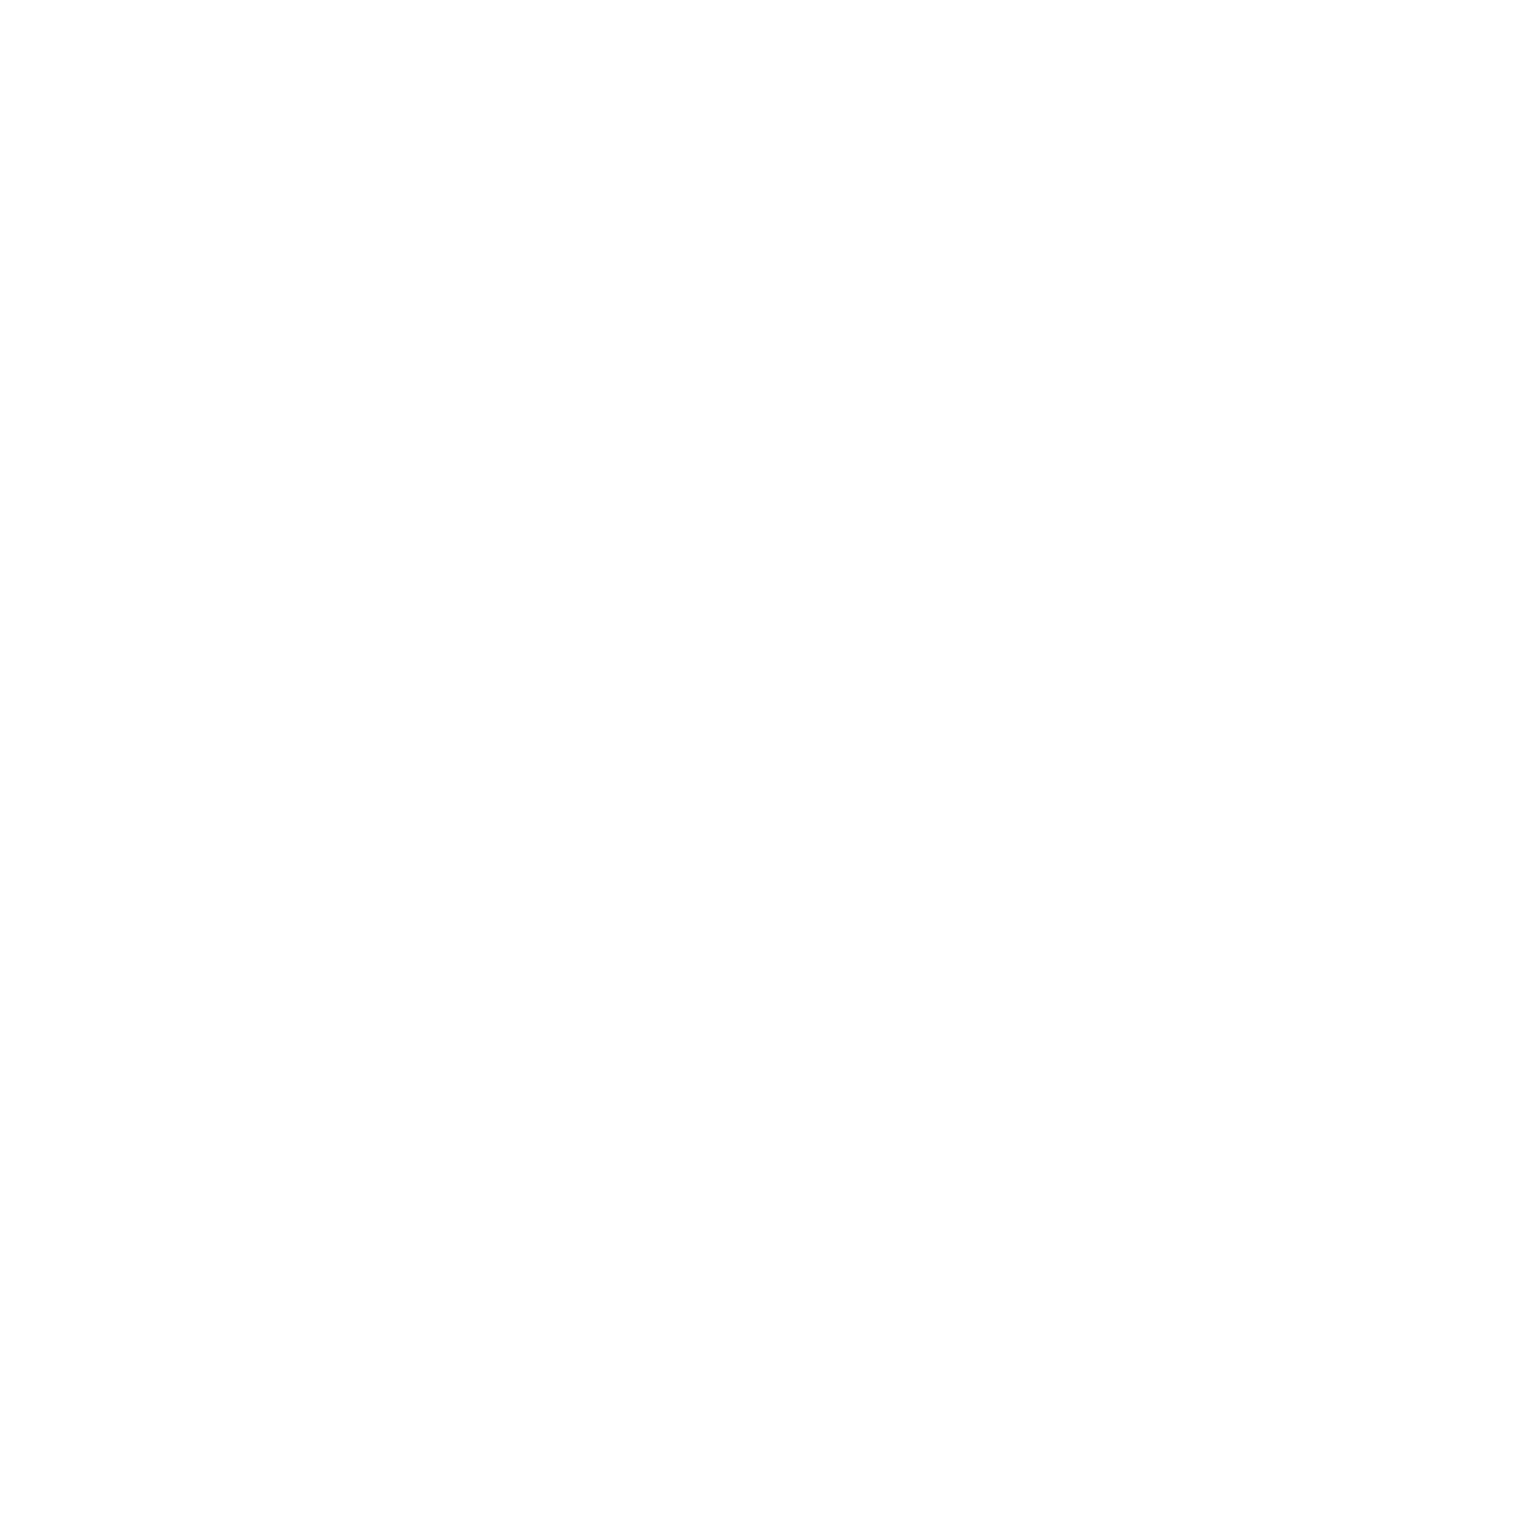 Newtek logo for dark backgrounds (transparent PNG)